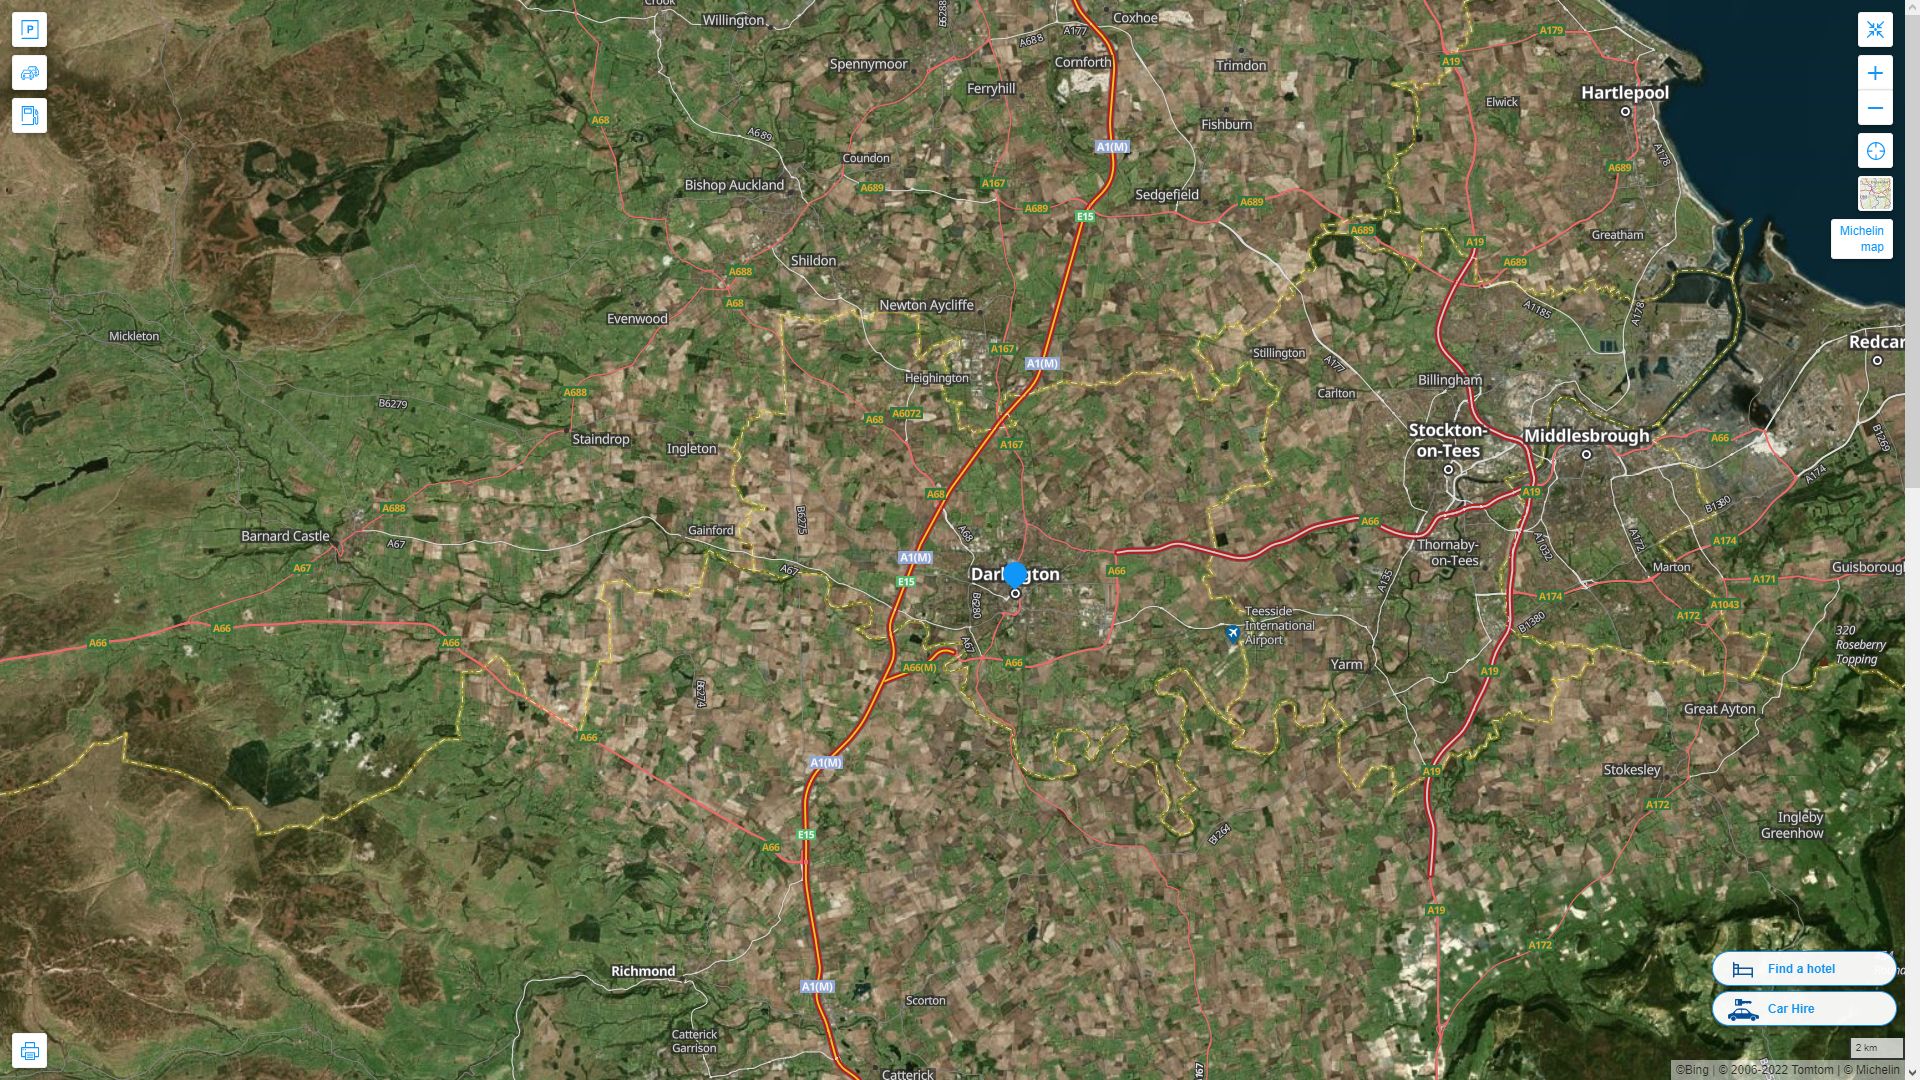 Darlington Royaume Uni Autoroute et carte routiere avec vue satellite